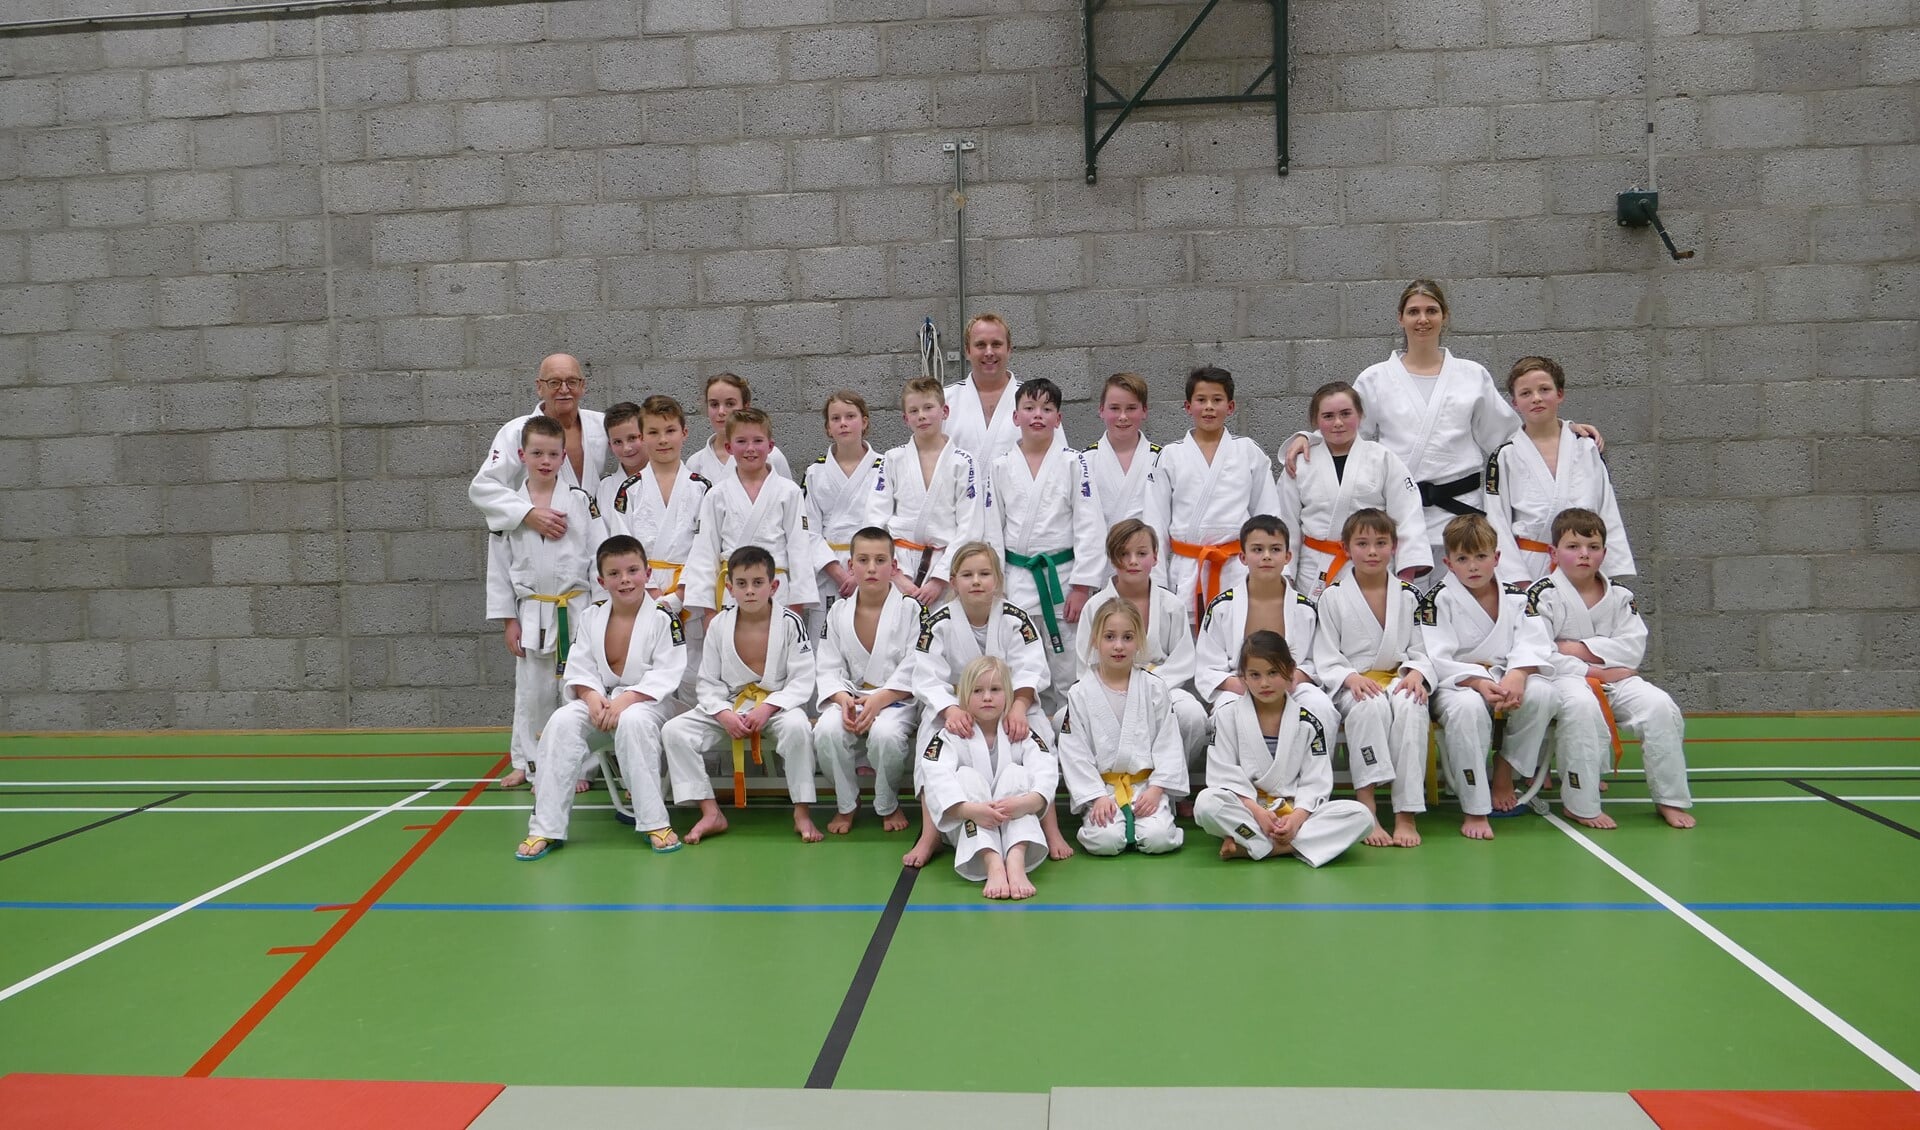 e wedstrijdgroep van judoclub Ichikan trainde gezamenlijk met judoka's uit Hellevoetsluis.